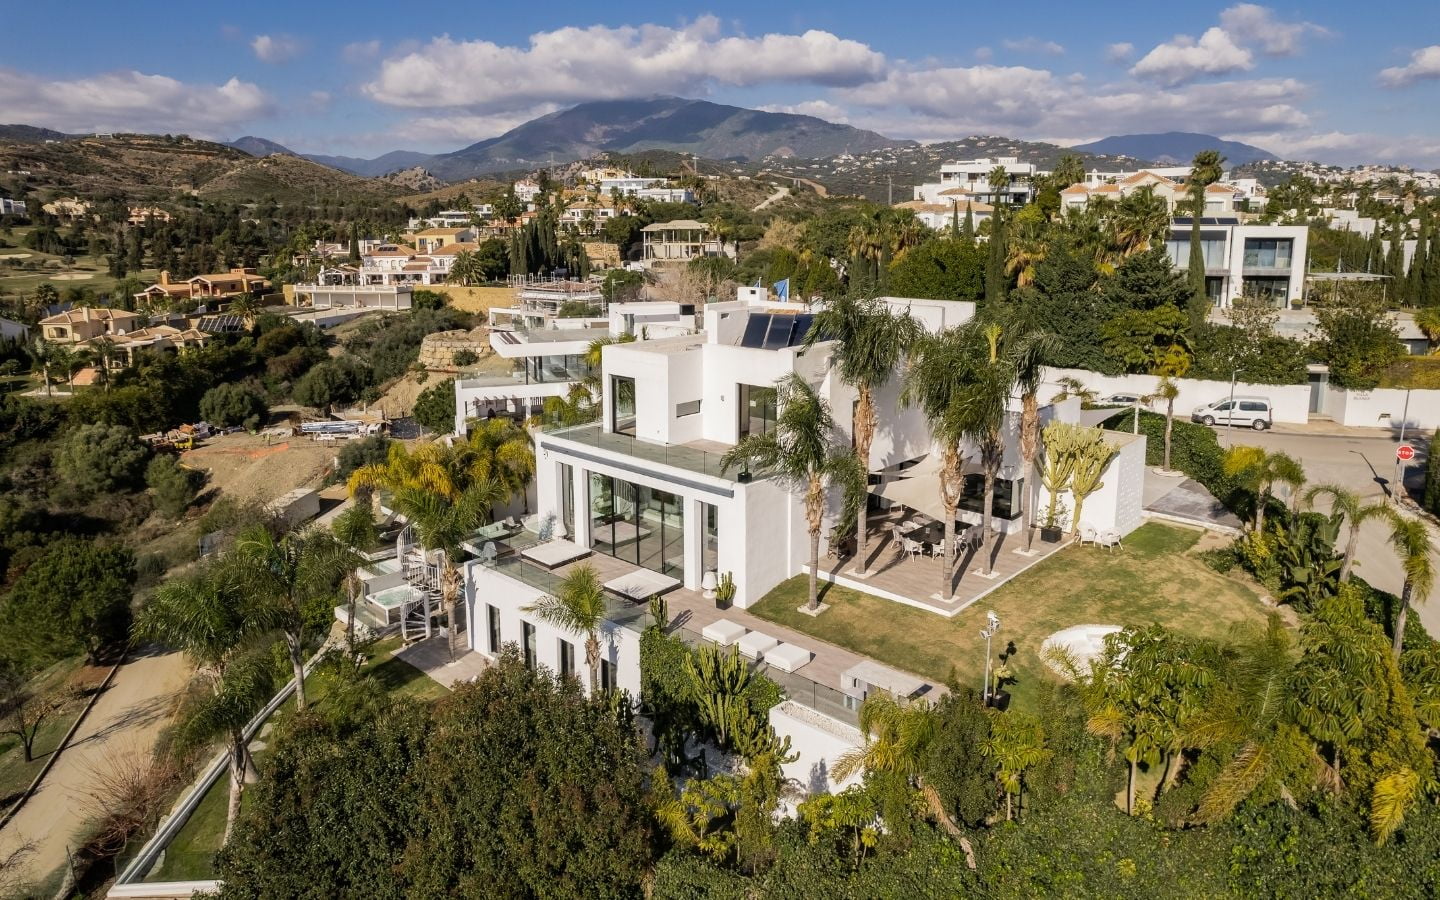 Villa à vendre à La Alqueria, Benahavis Espagne